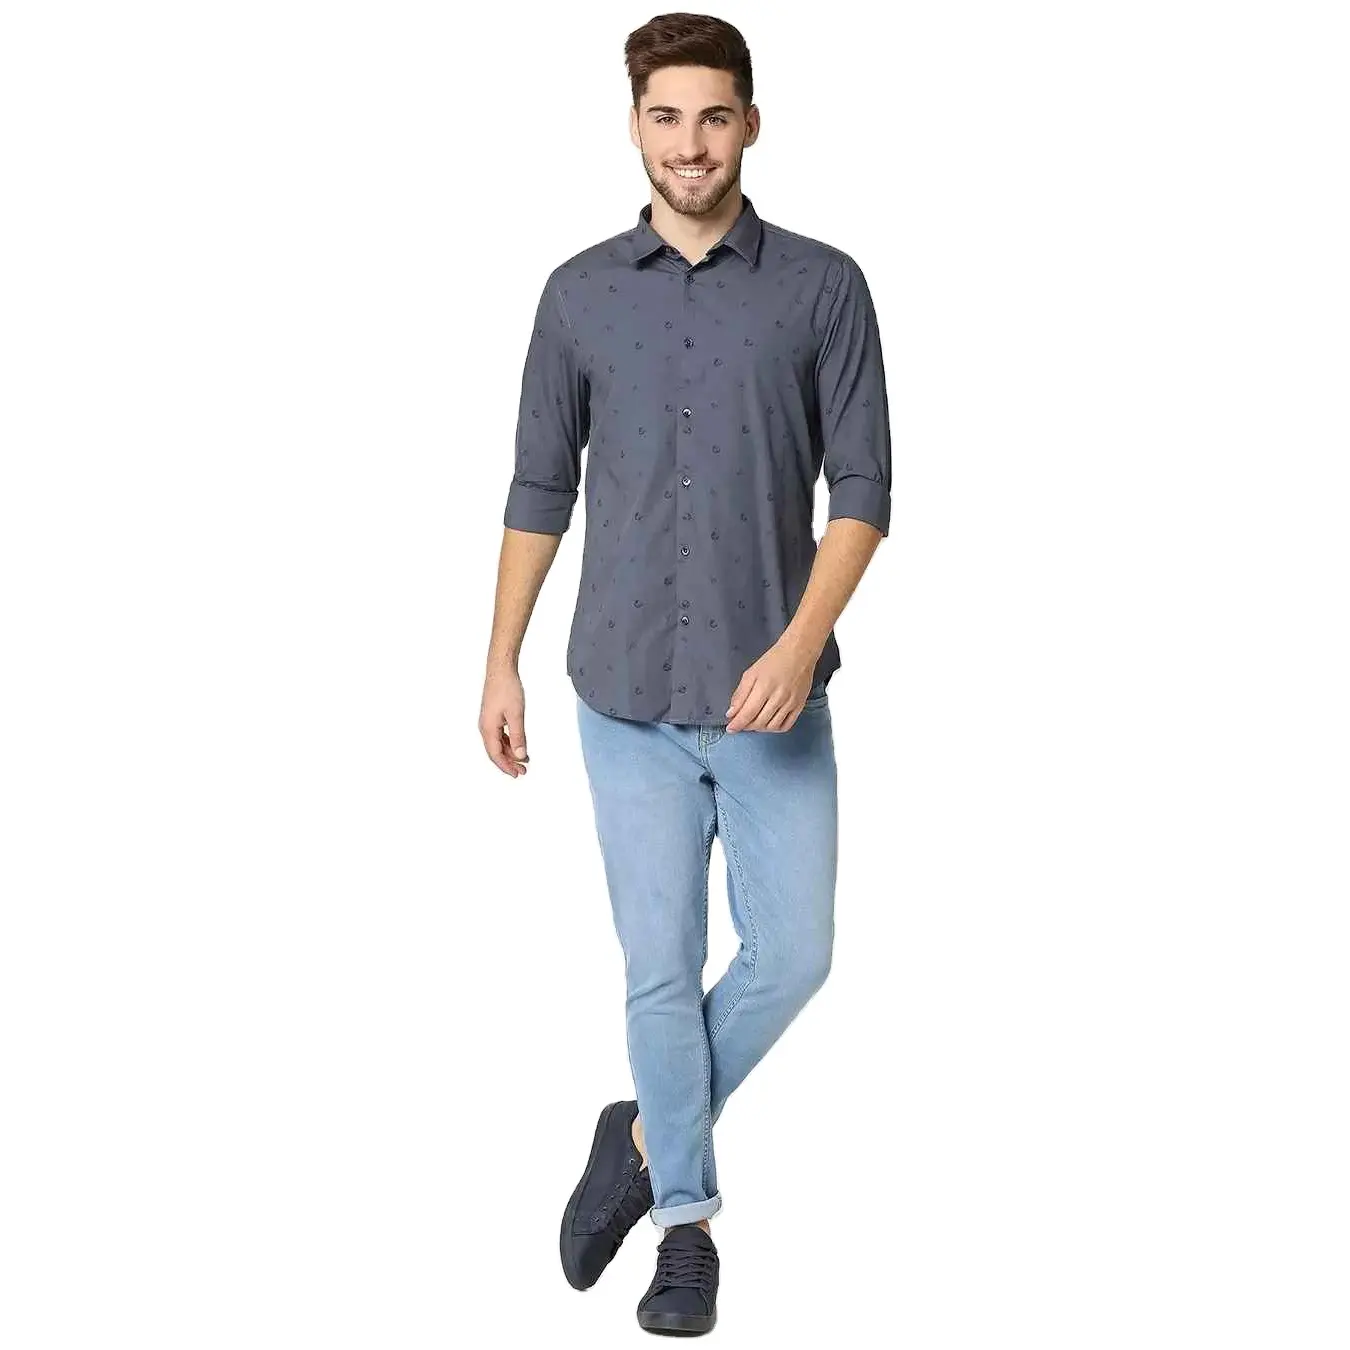 BUROOJ IMPEX-camisas de algodón 100% para hombre, camisas de vestir, venta AL por mayor, ligeras, con estampado de puntos, nuevo artículo